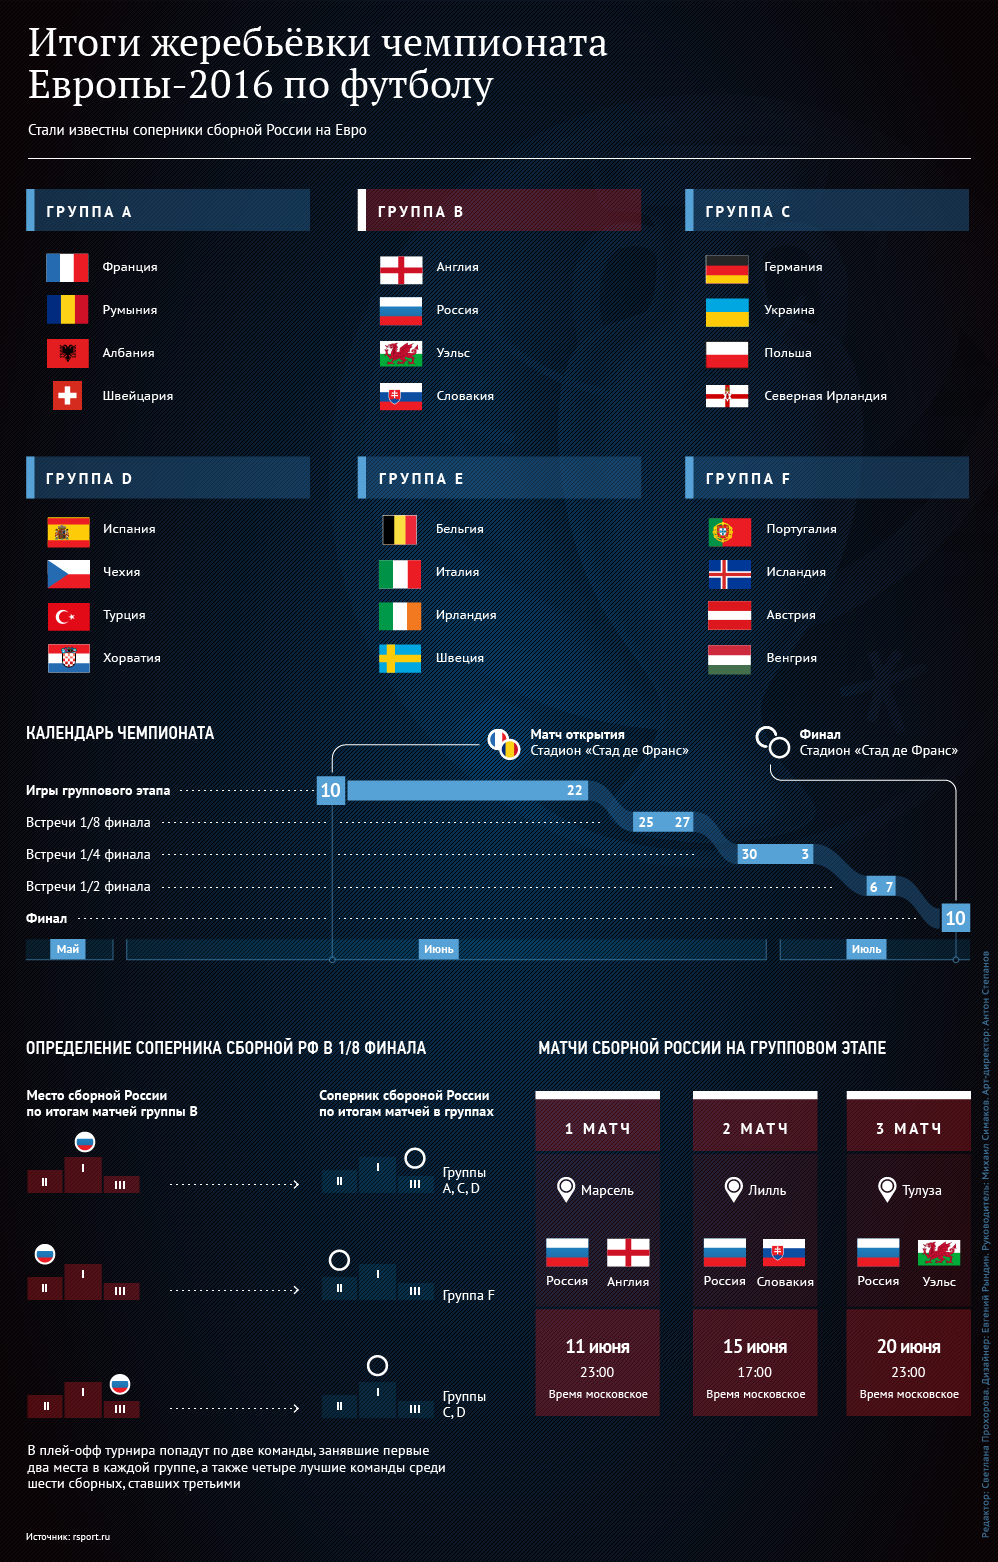 Итоги жеребьёвки чемпионата Европы-2016 по футболу